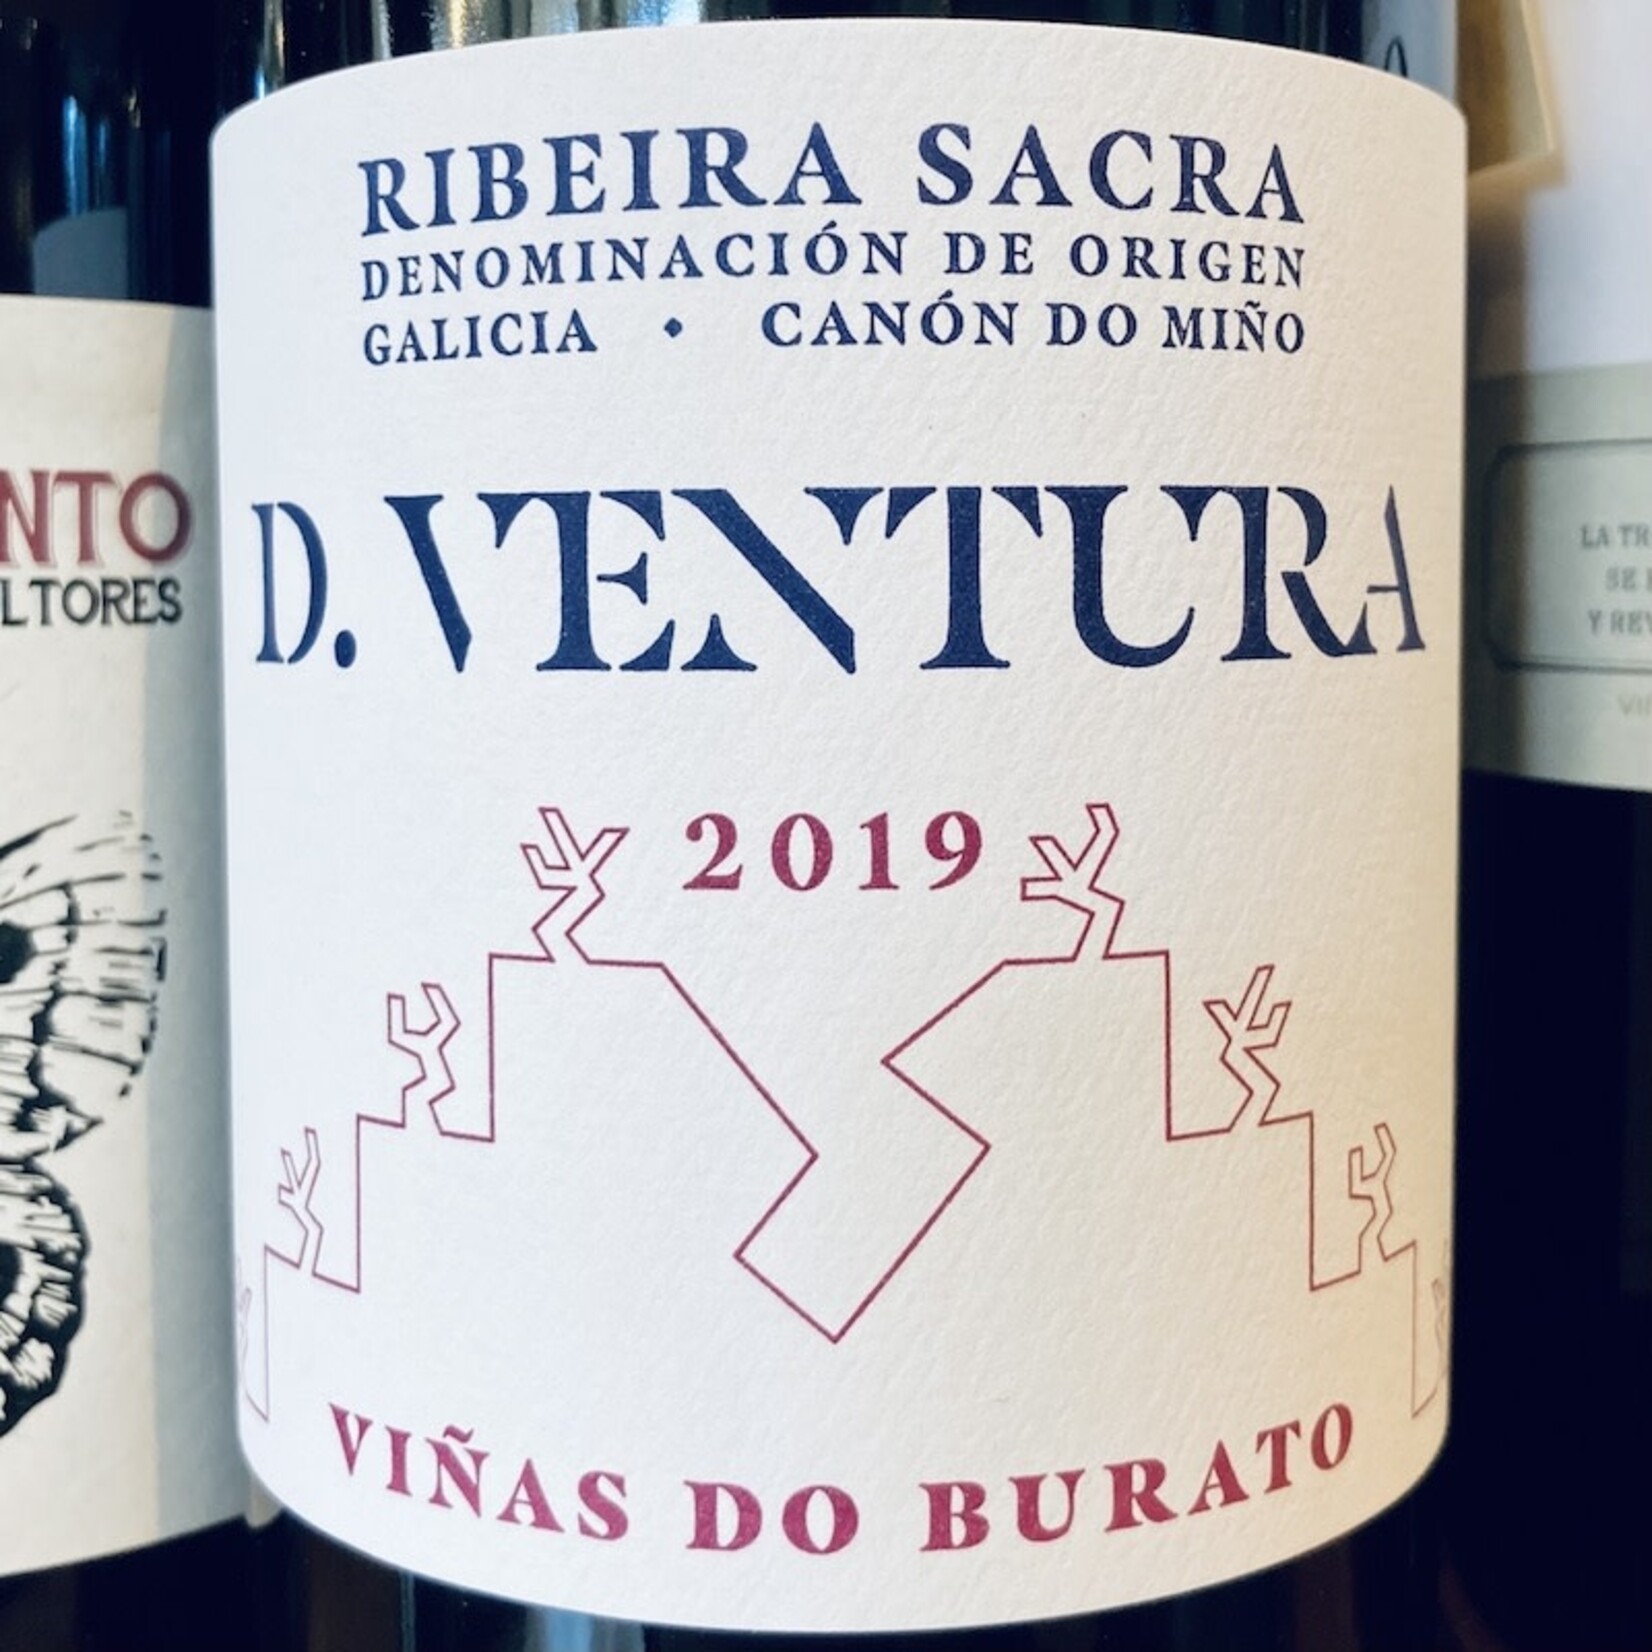 Spain 2021 D. Ventura Ribeira Sacra "Viñas do Burato"